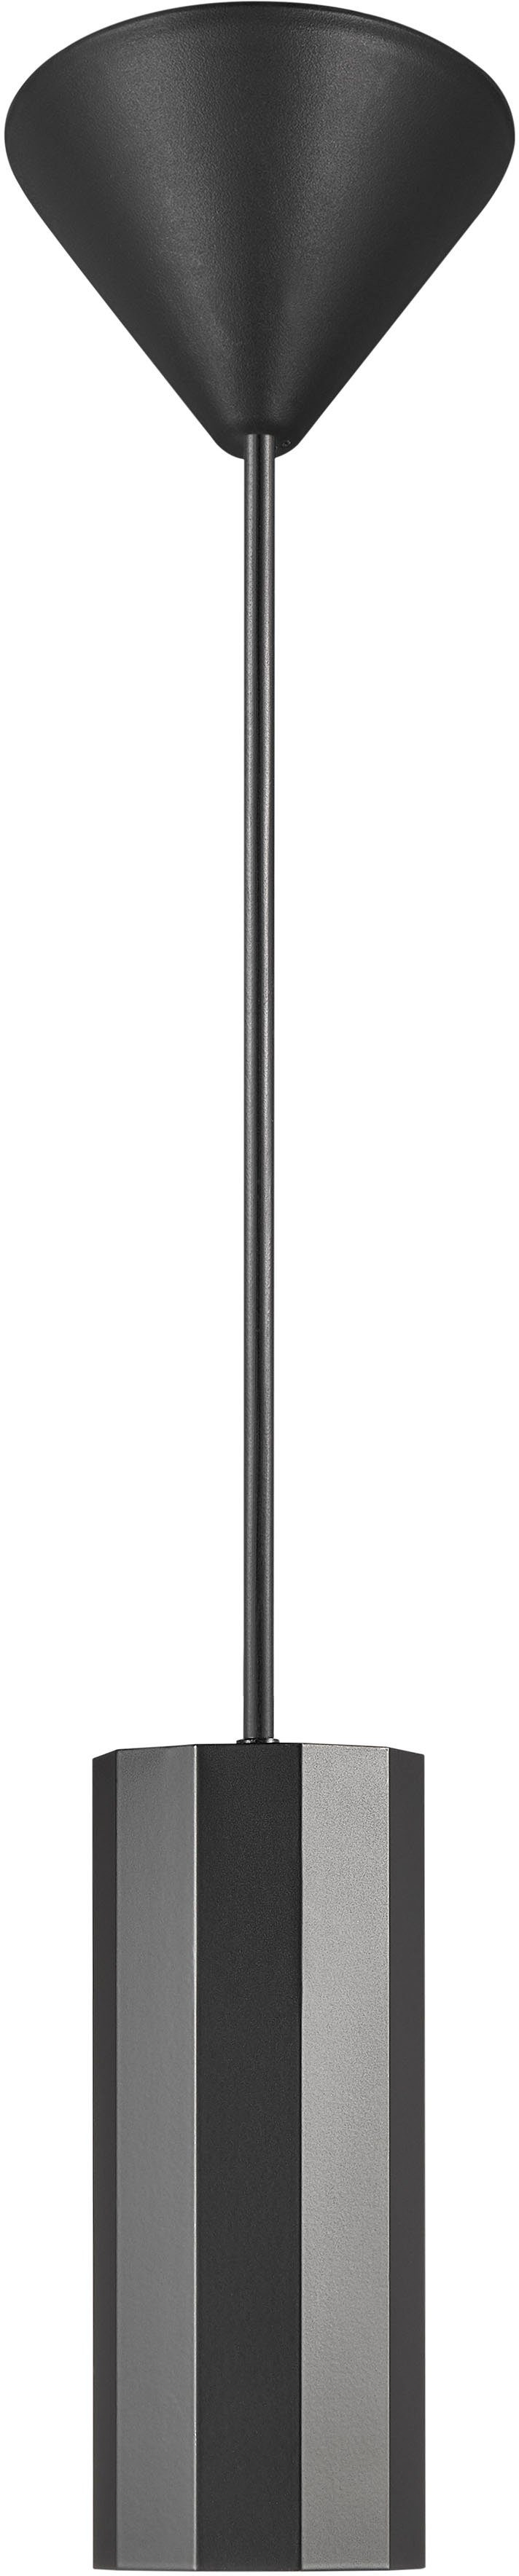 Nordlux Pendelleuchte Alanis, ohne Minimalistisches Leuchtmittel, Messing-Look Profil, Design, matter 10-seitiges